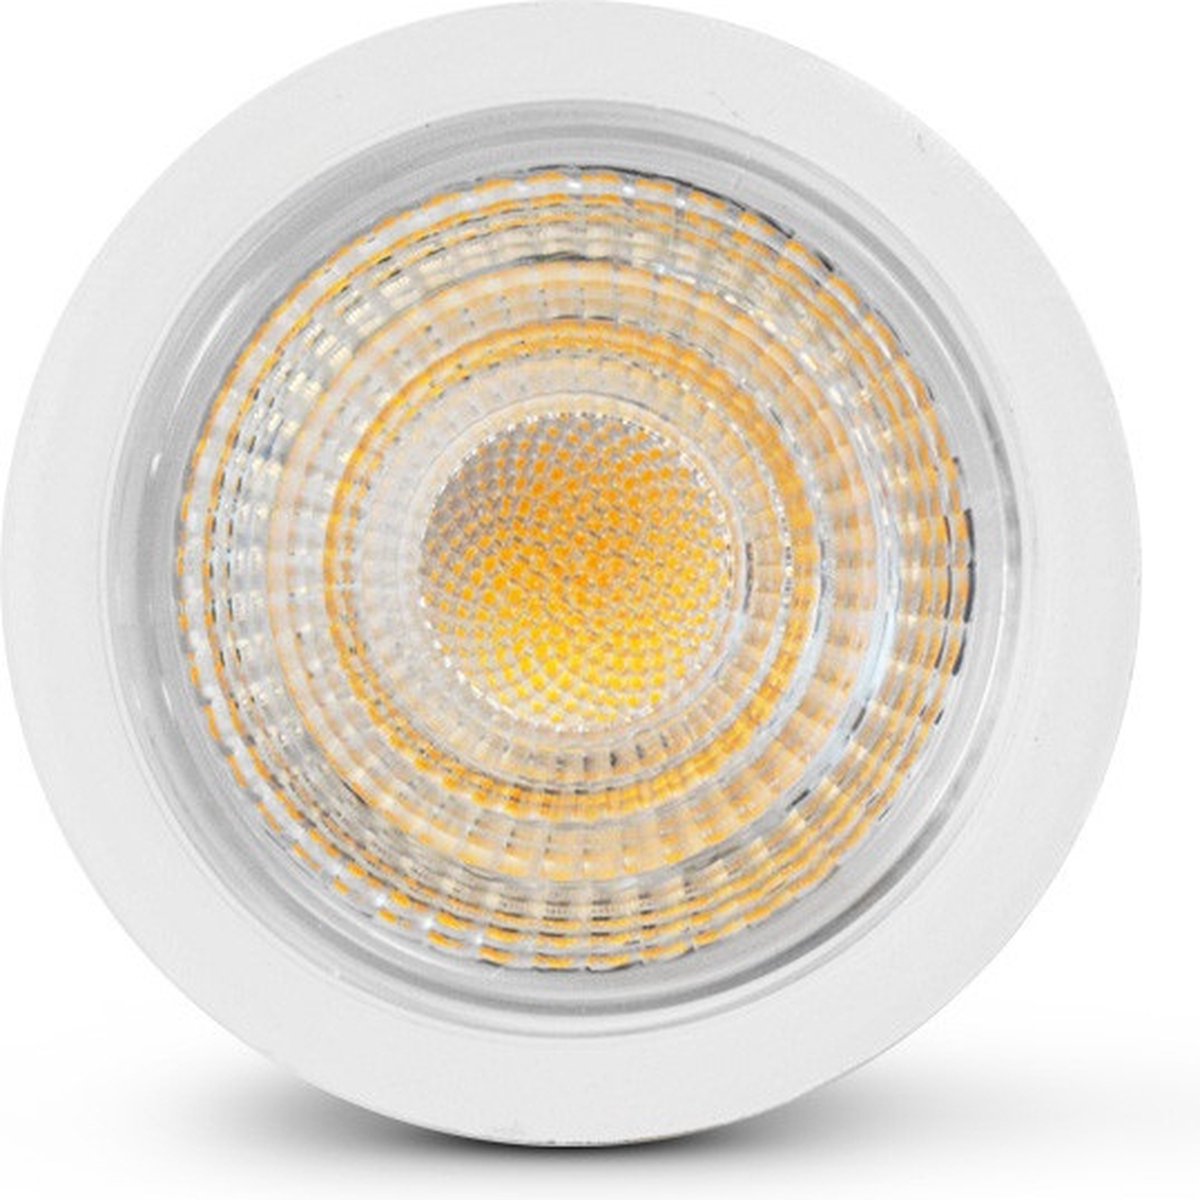 LED spot warm wit licht - per 5 stuks - 5 Watt - GU10 - 2700K - niet dimbaar